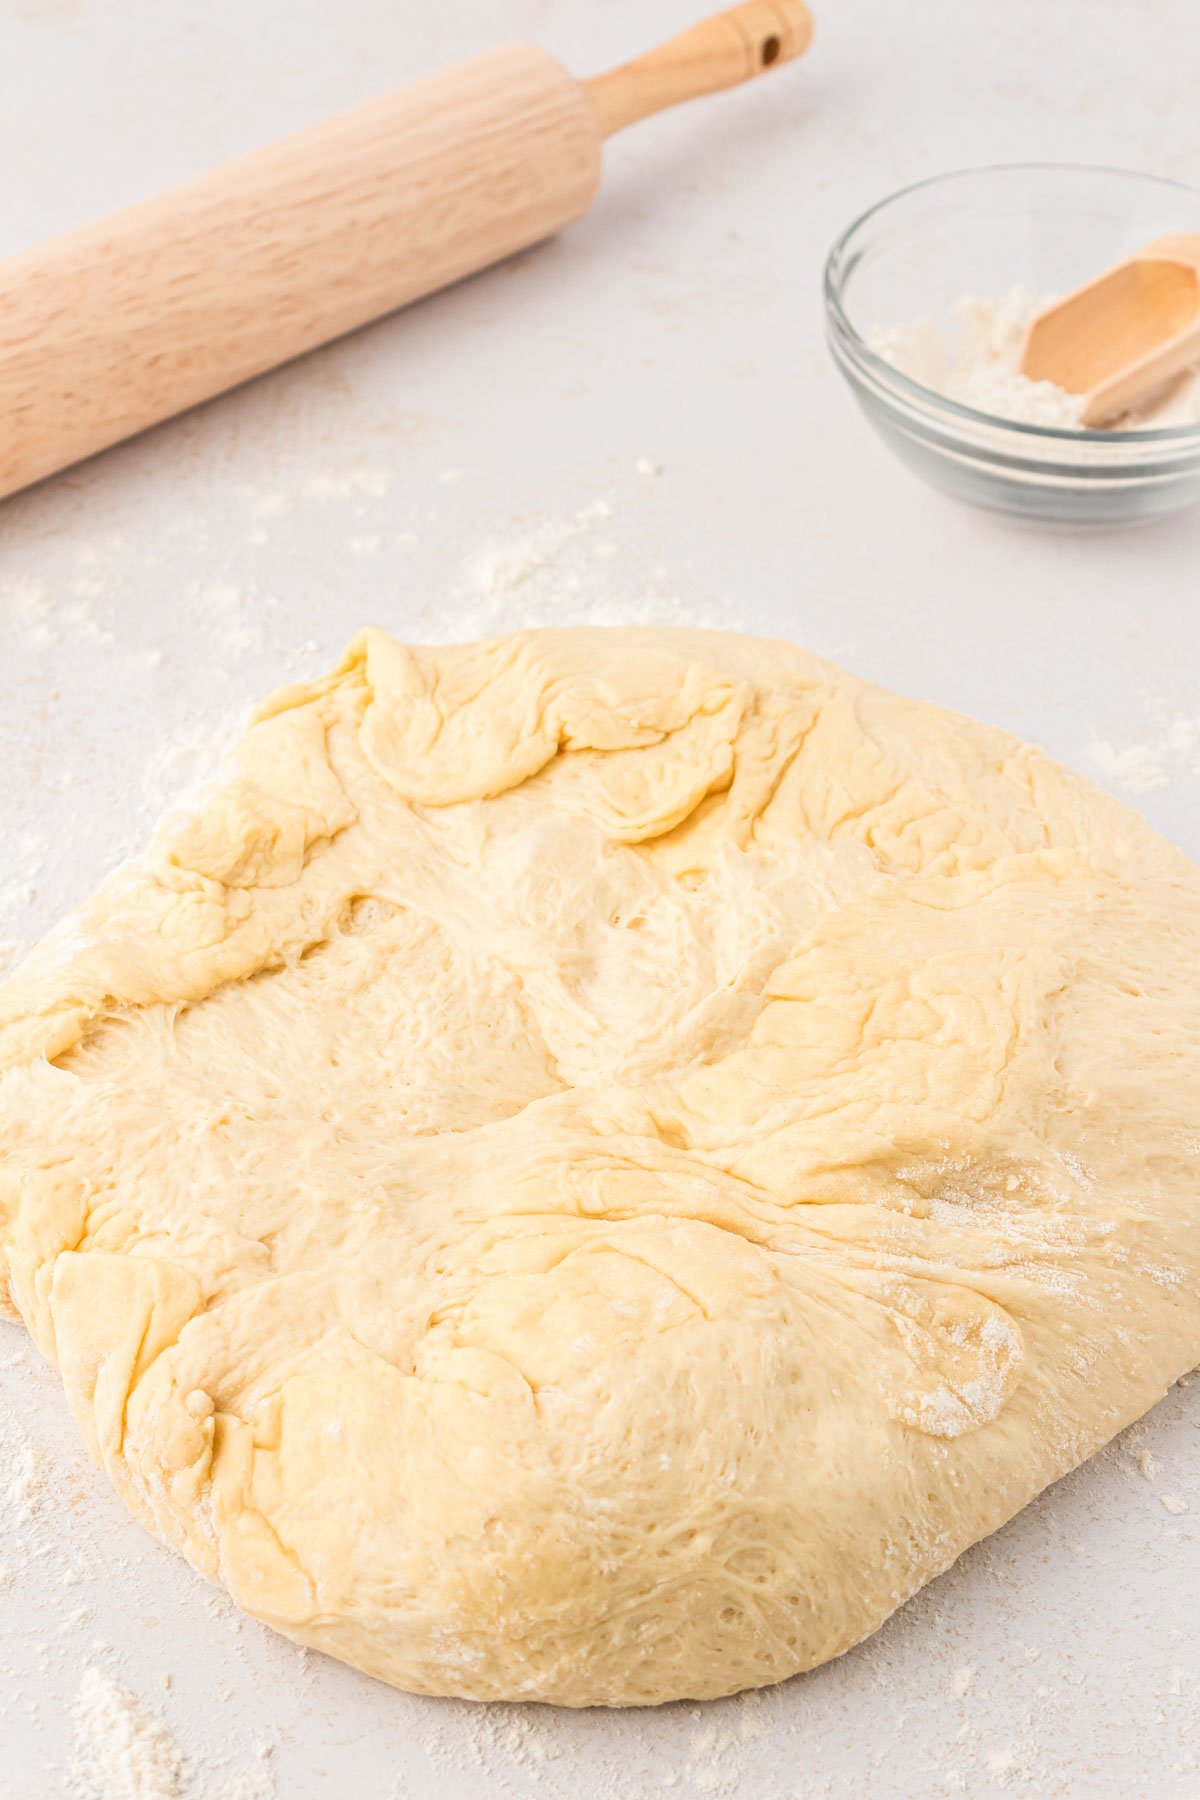 Cinnamon roll dough on a floured surface.